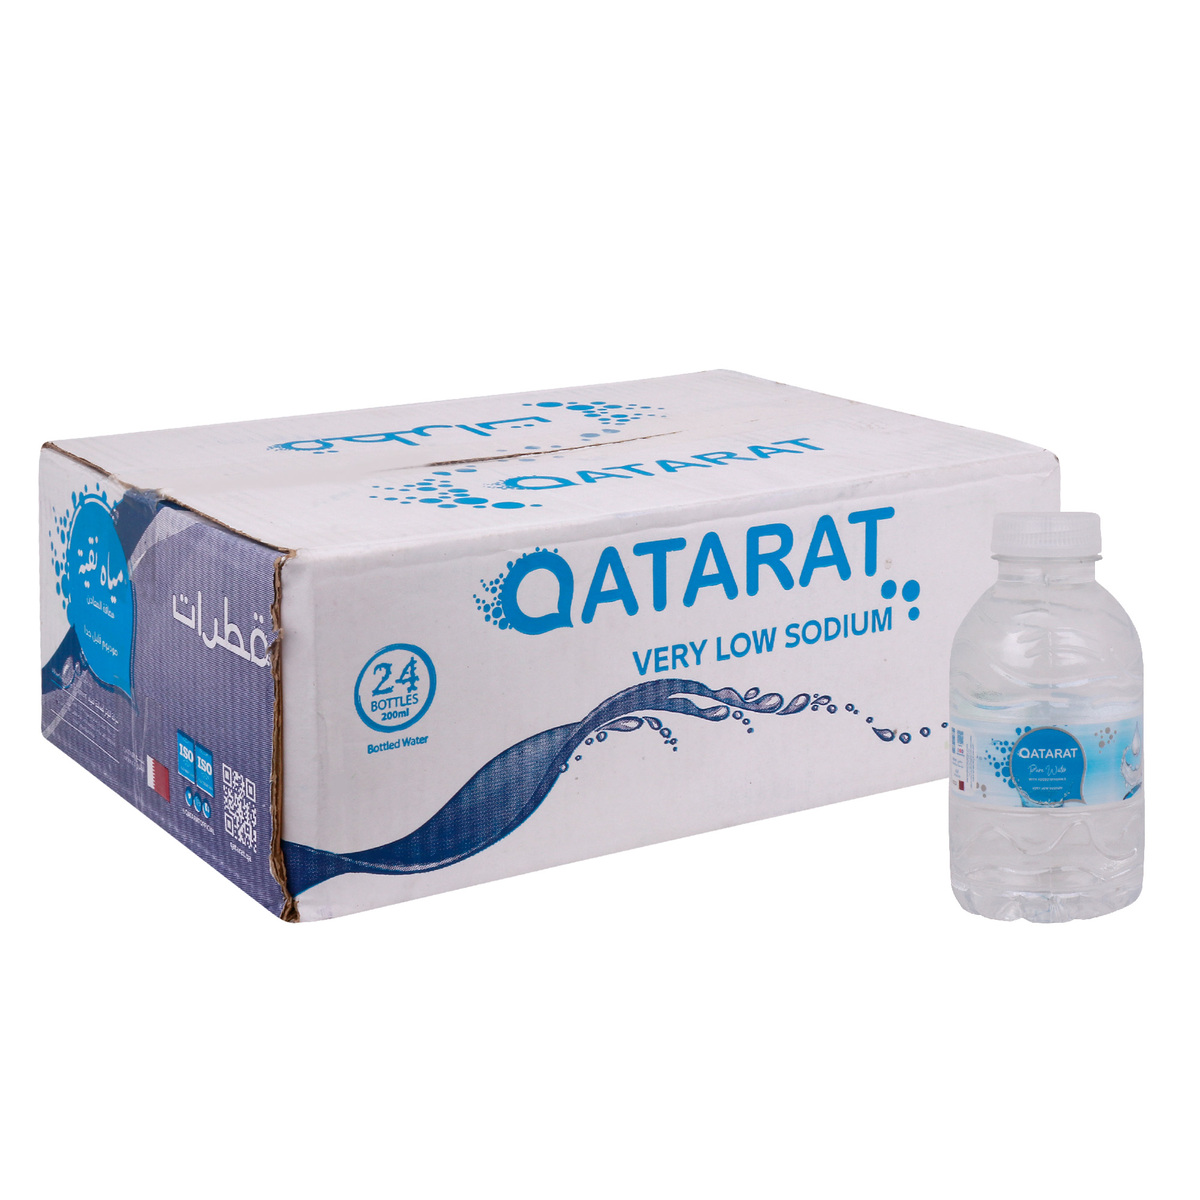 Qatarat Mineral Water 24 x 200ml